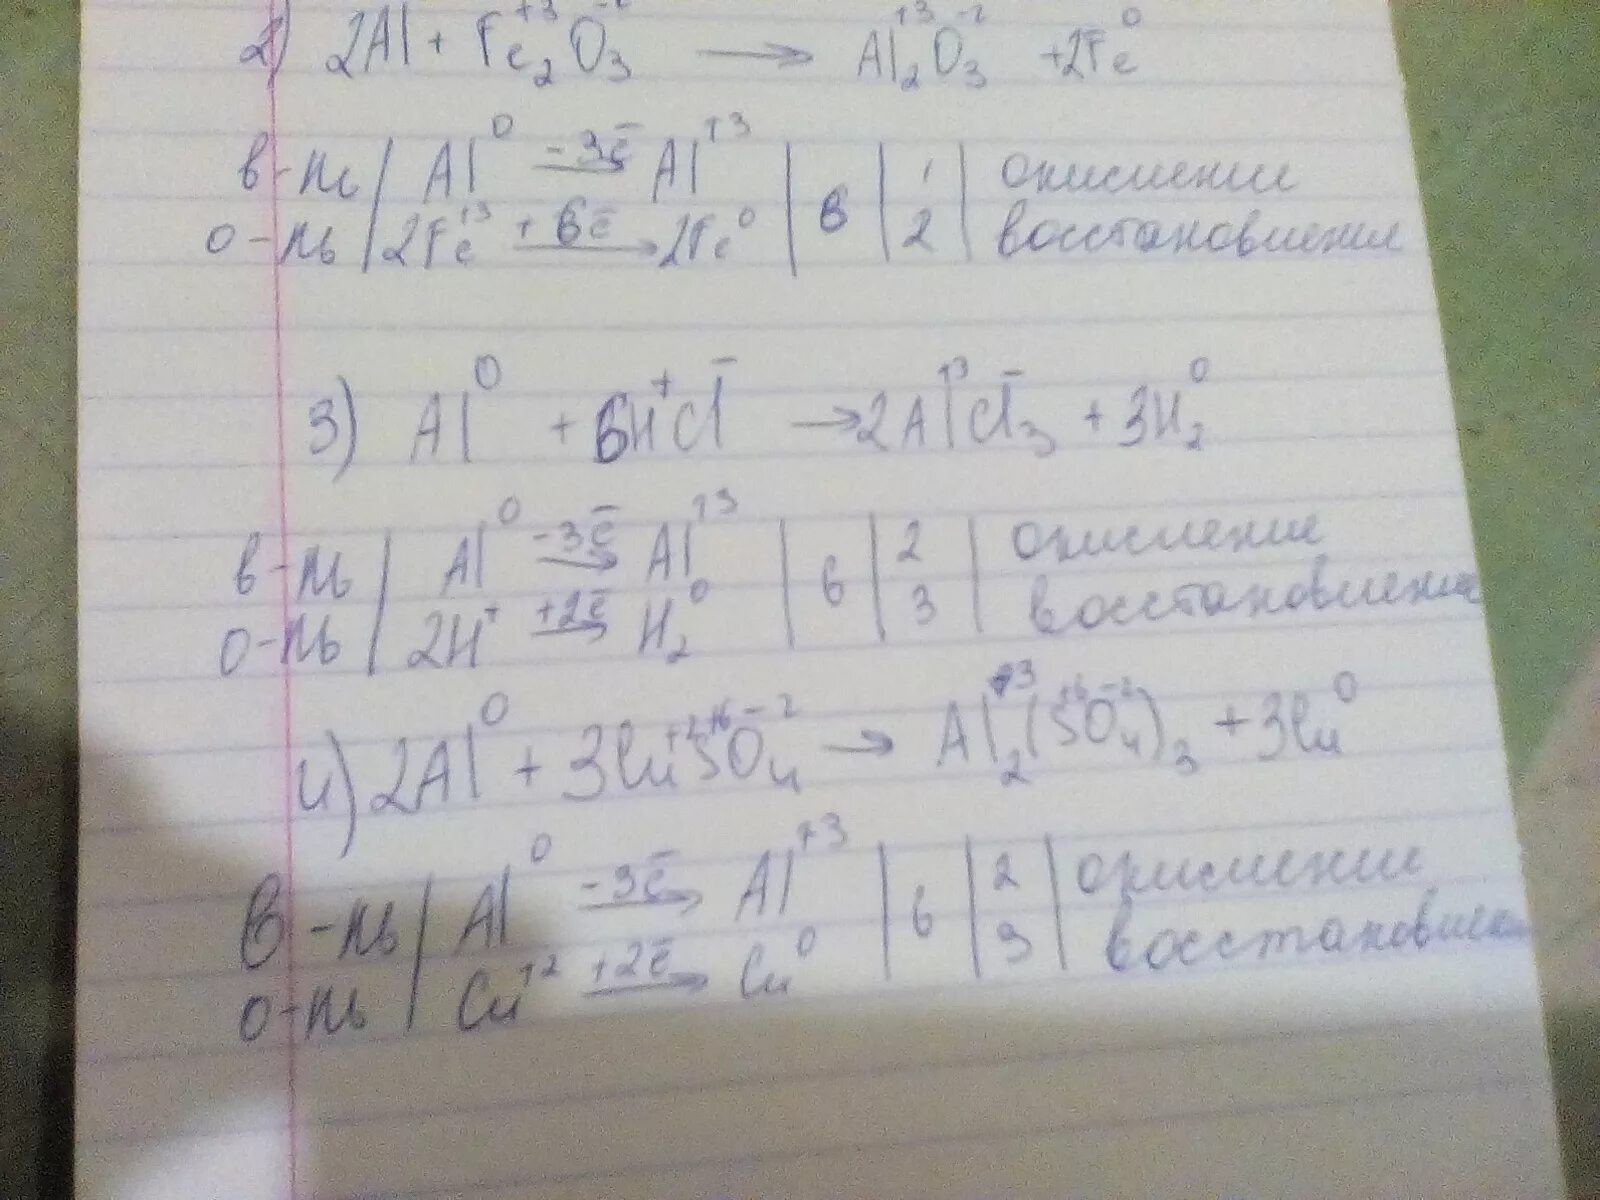 Реакция 2al fe2o3 2fe al2o3. Al fe2o3 al2o3 Fe окислительно восстановительная. Al+fe3o3. Al + fe₃o₄ = al₂o₃ + Fe. Al+fe2o3 баланс.